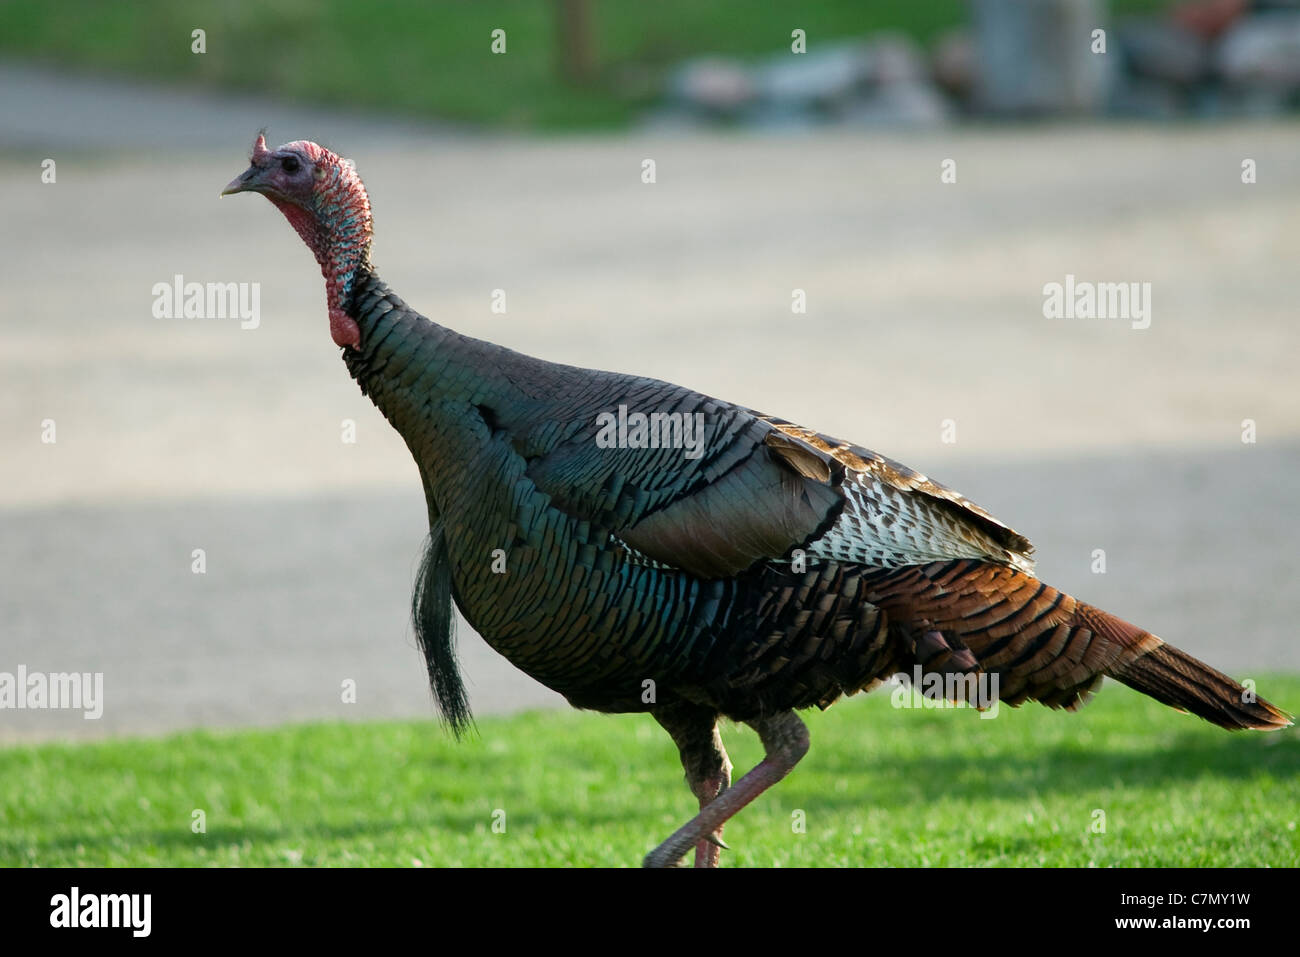 Wild turkey or melagris gallopavo walking across grass Stock Photo